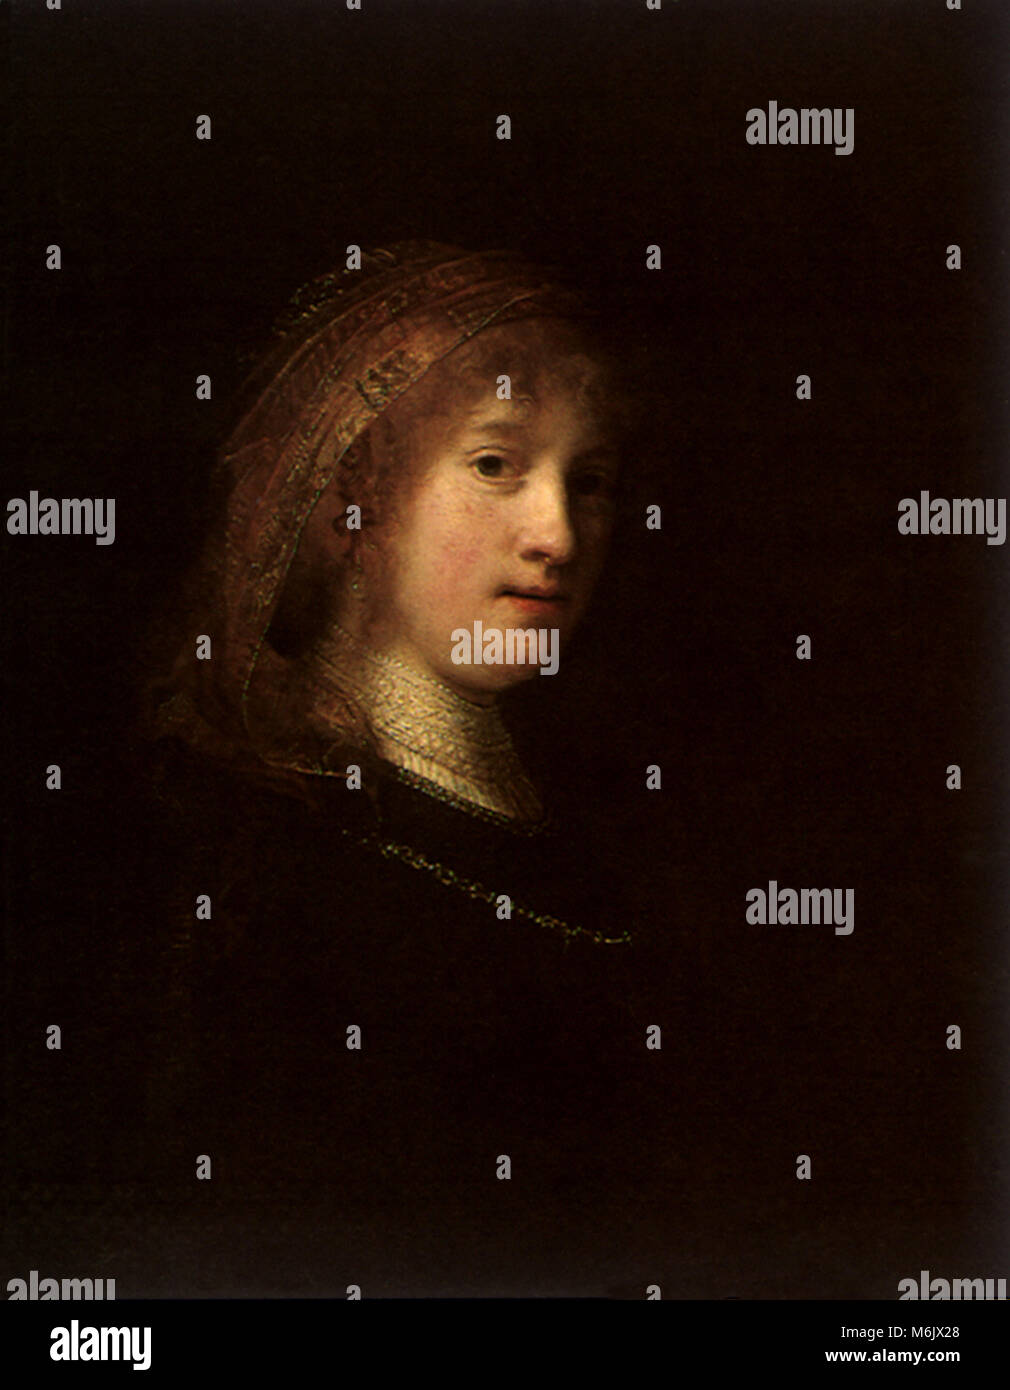 Saskia, Rembrandt, Harmensz van Rijn, 1634. Stockfoto